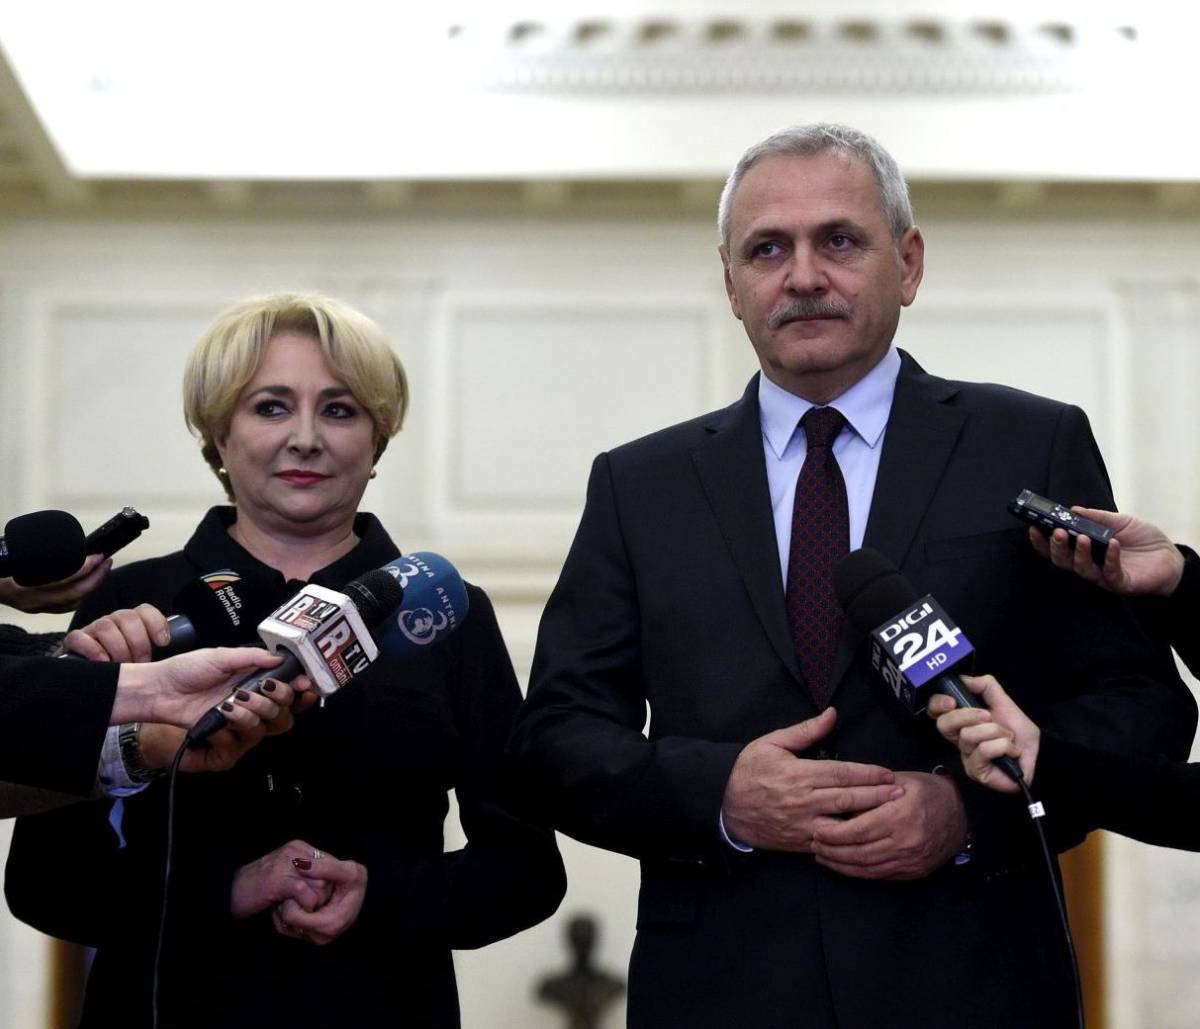 Liviu Dragnea kiáll a lemondásra szólított Viorica Dăncilă miniszterelnök mellett